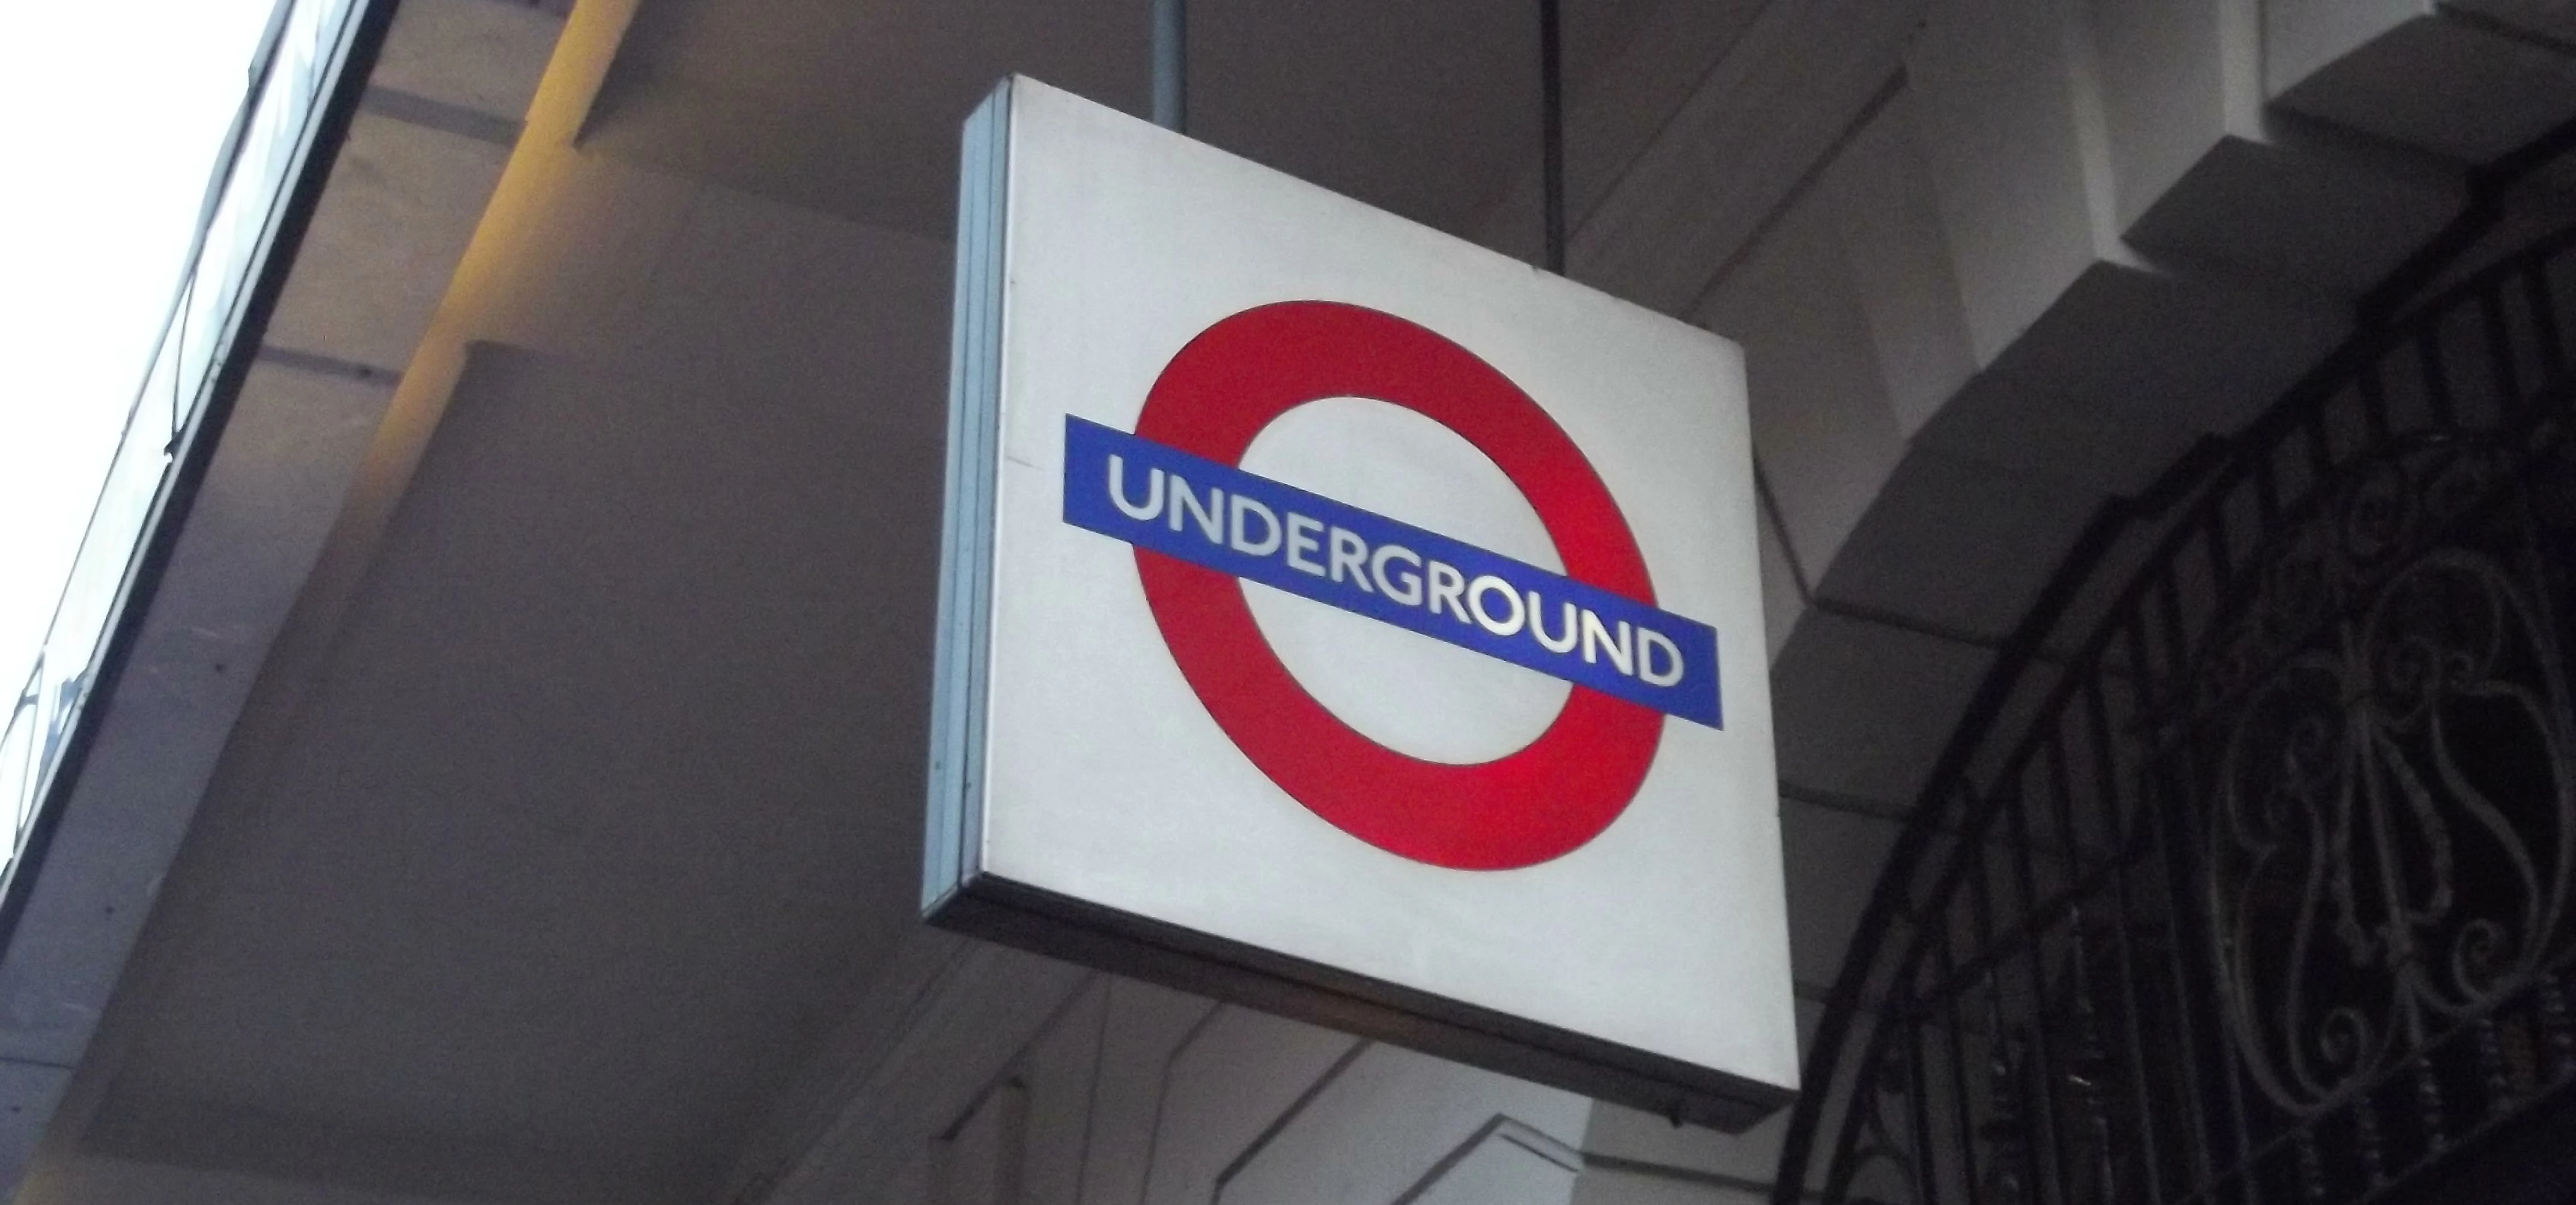 Victoria Arcade - Victoria, London - Underground sign